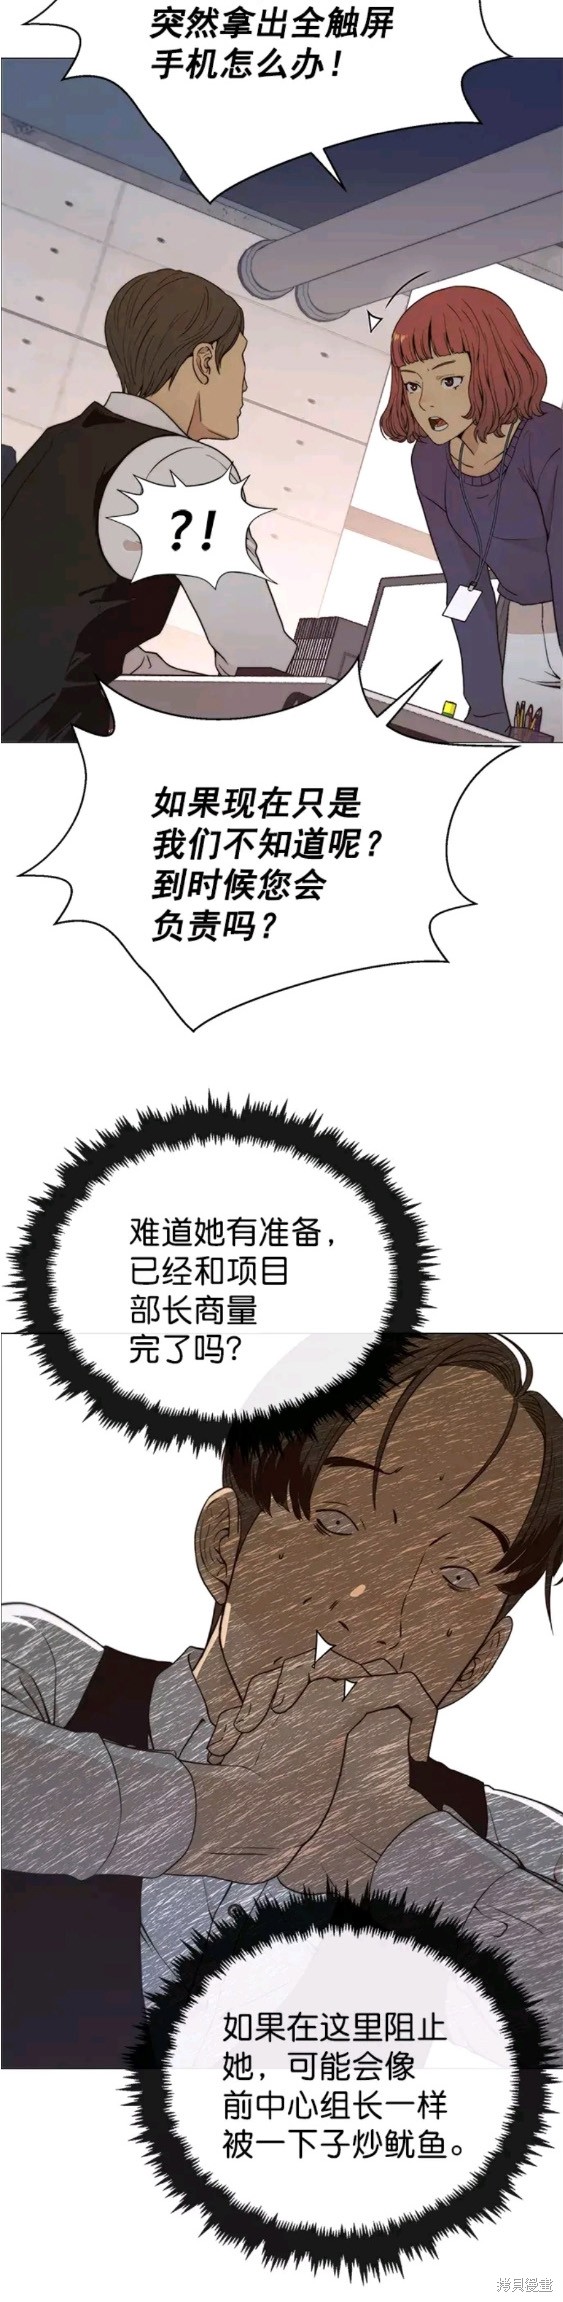 男子汉漫画,第99话10图